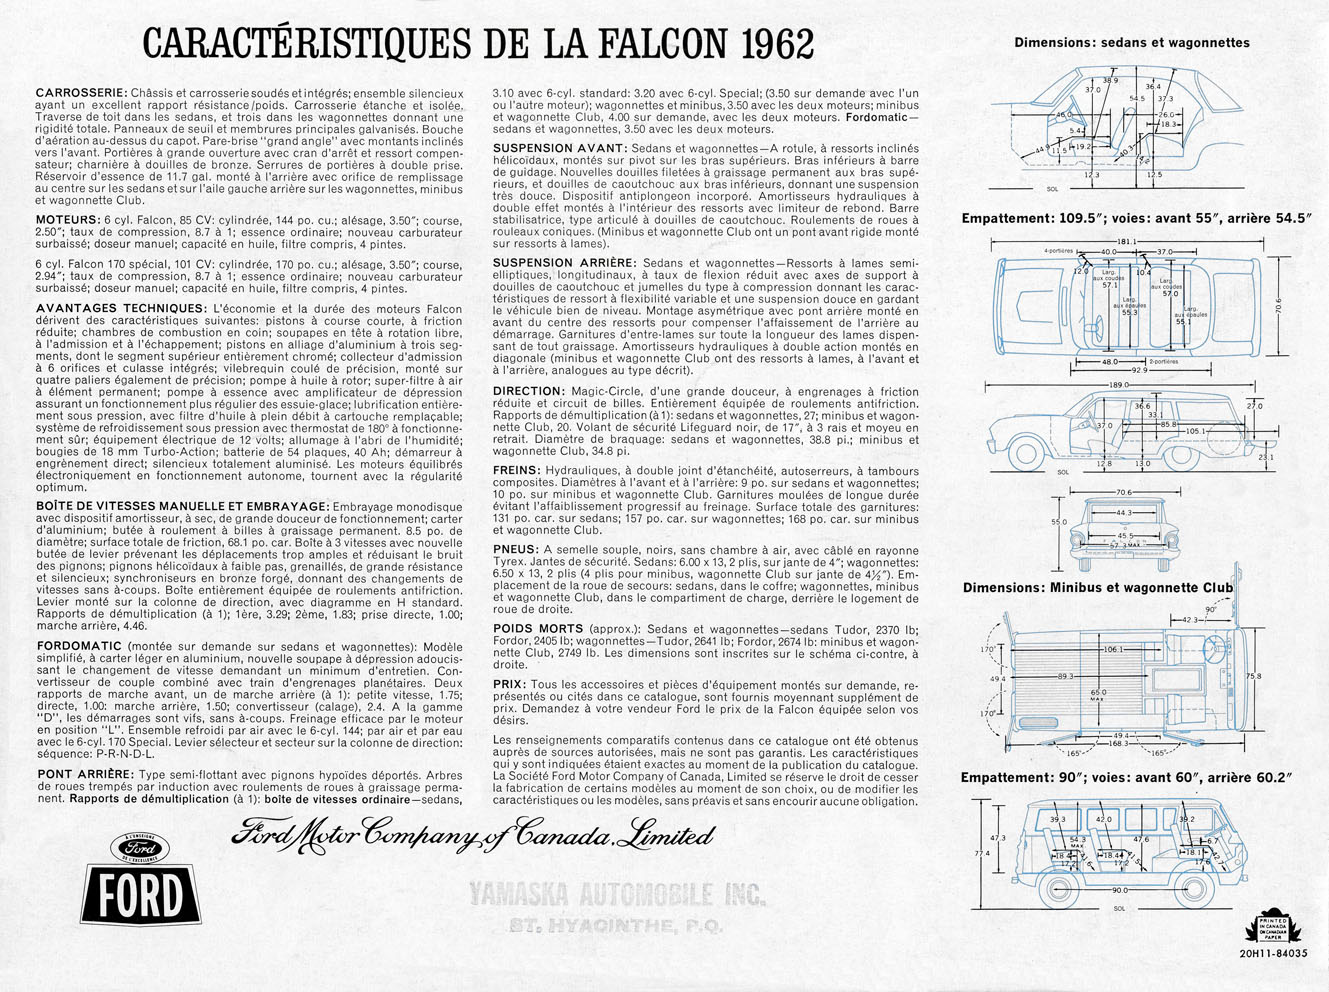 n_1962 Ford Falcon (Cdn-Fr)-16 - Copy.jpg